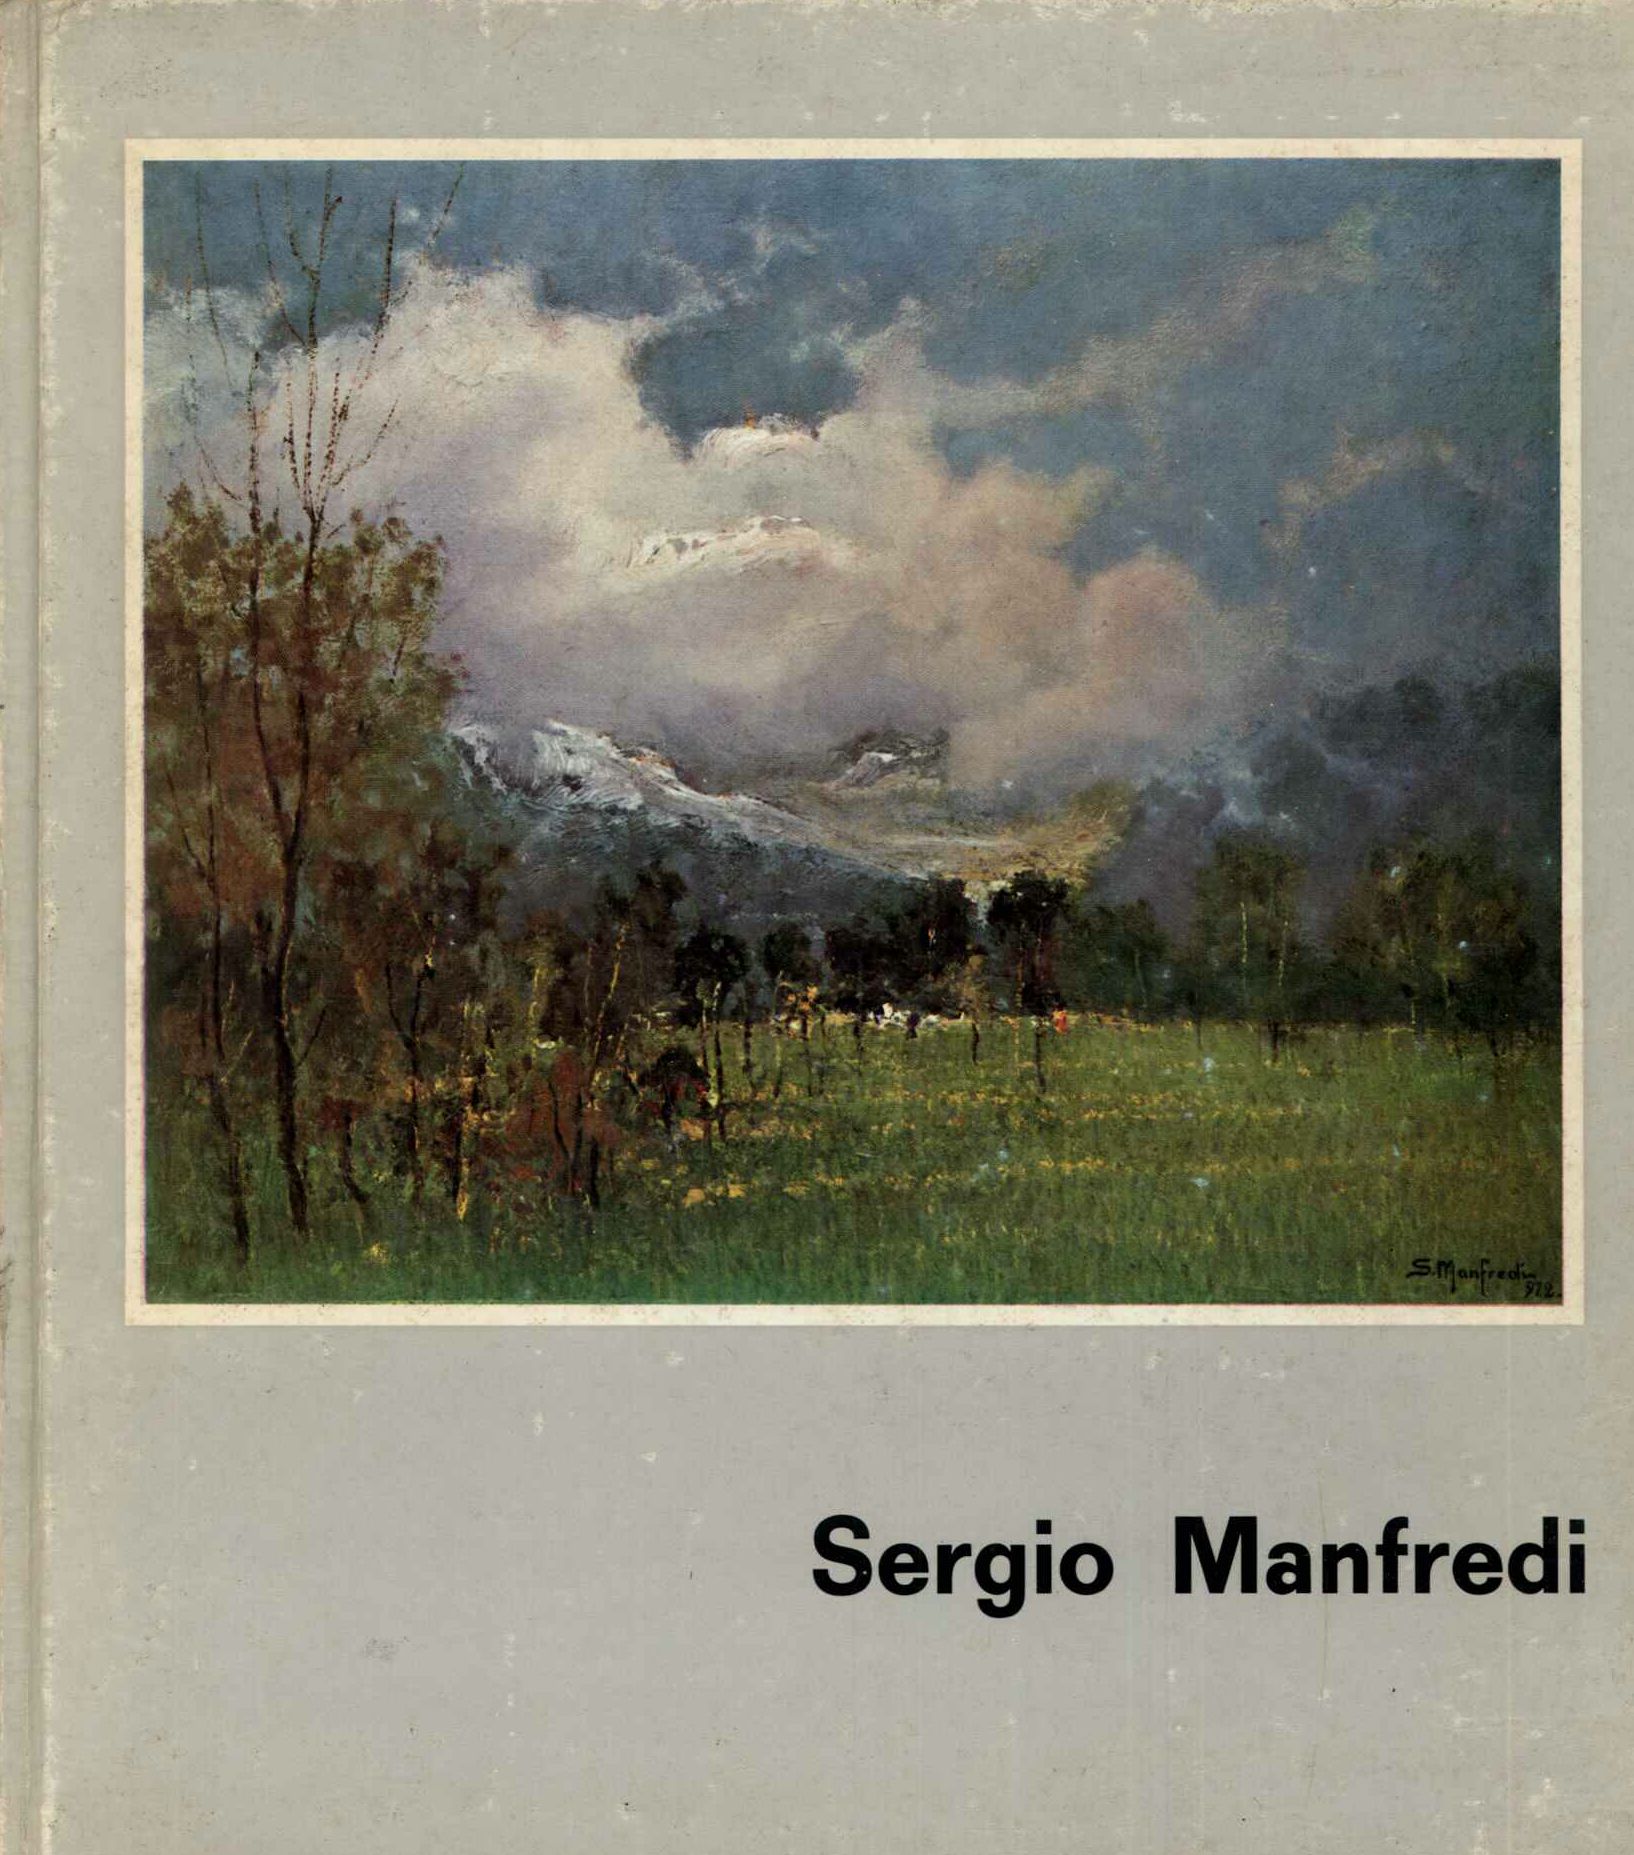 Sergio manfredi